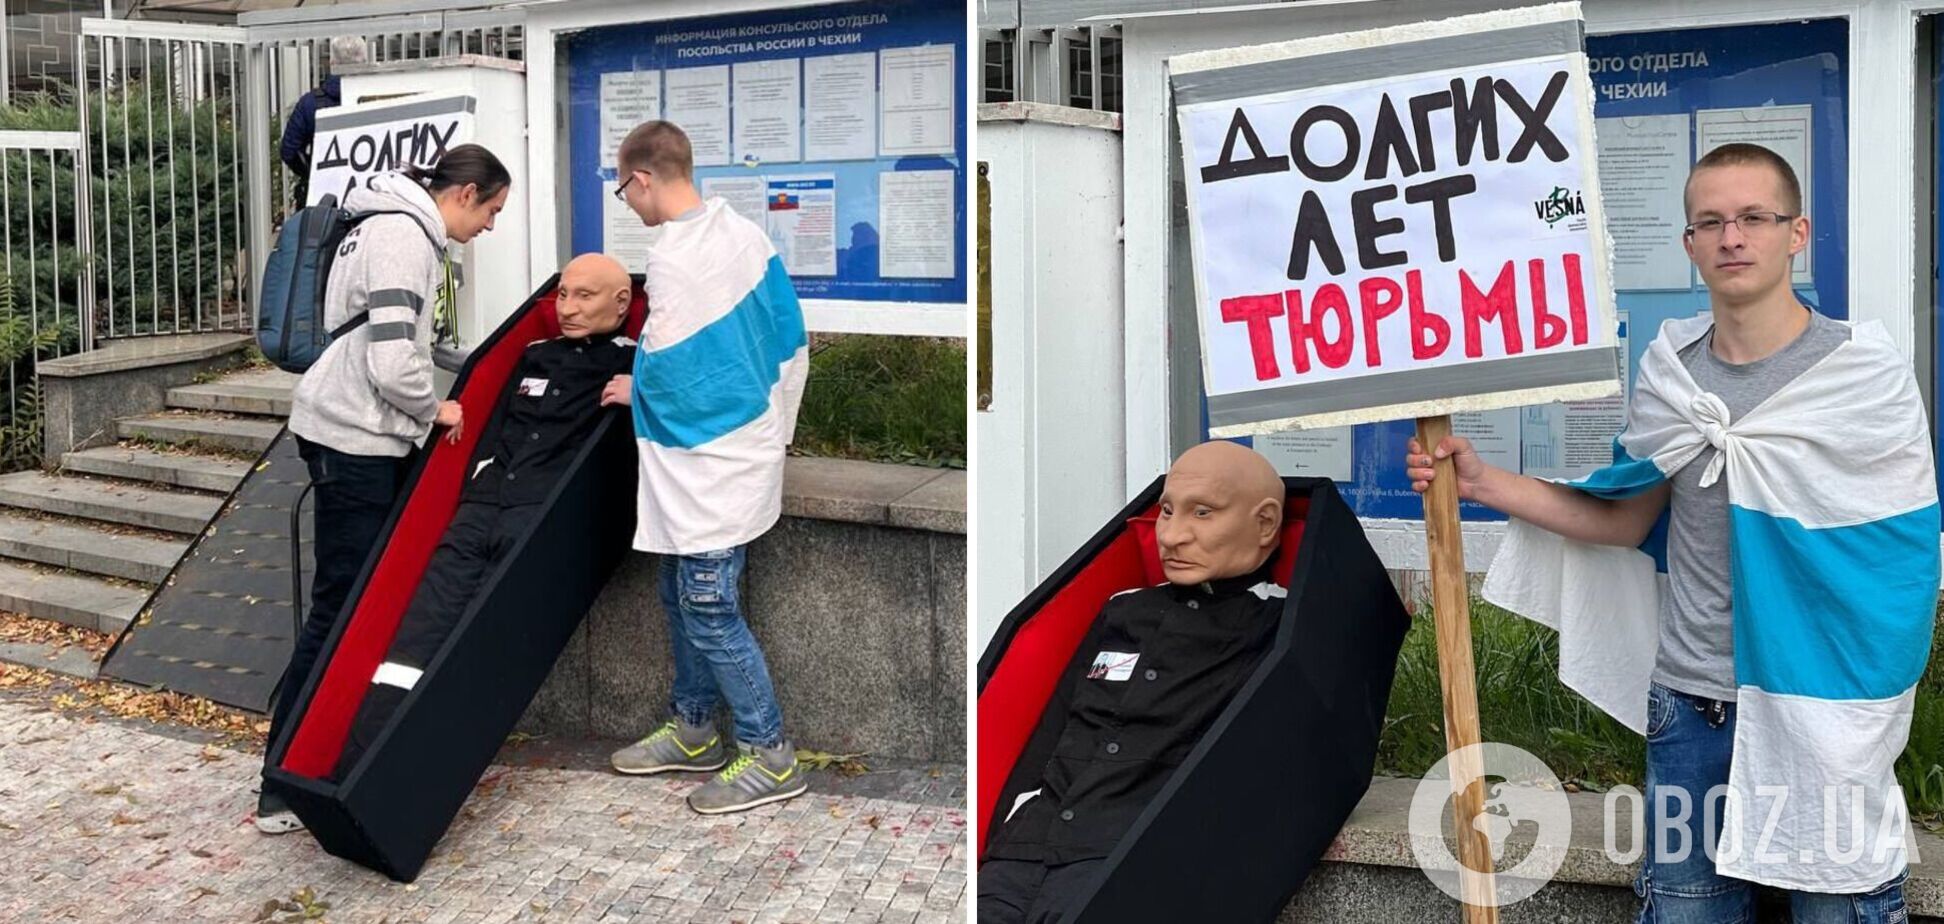 'Довгих років тюрми': в Празі активісти провели сміливу акцію біля посольства РФ до дня народження Путіна. Фото і відео